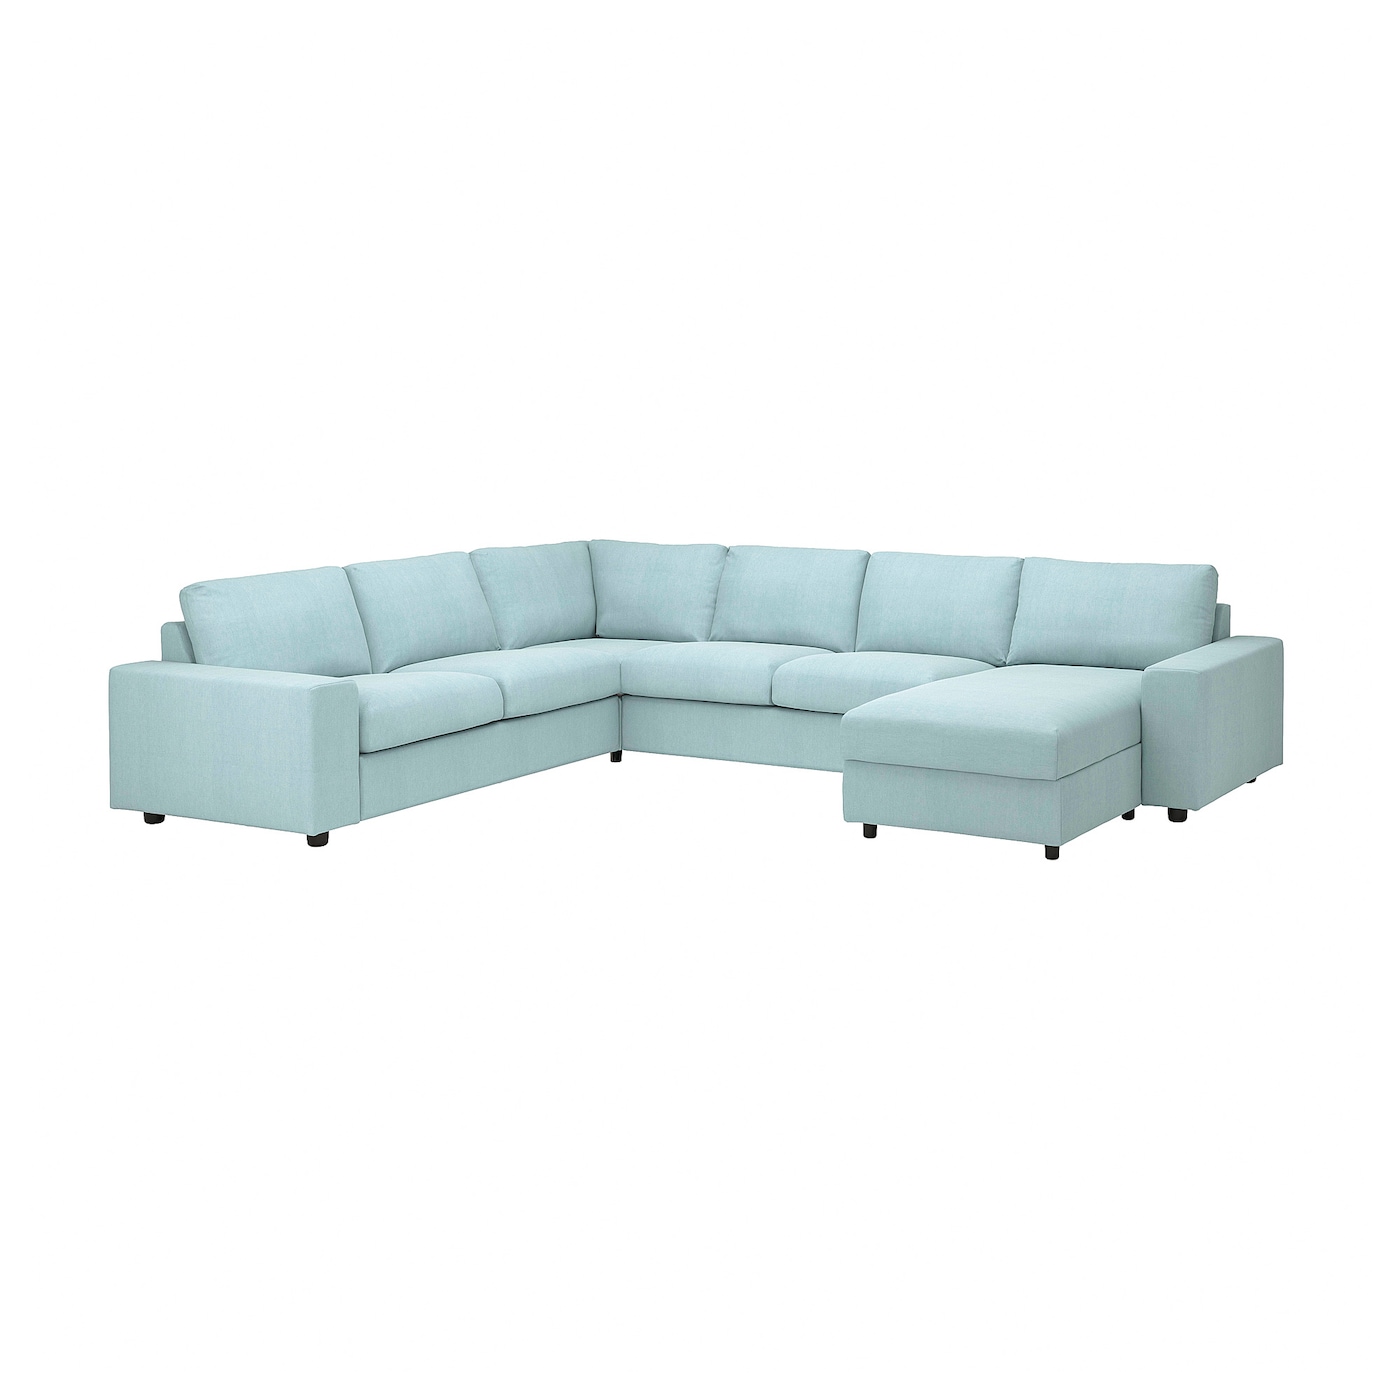 ВИМЛЕ Диван угловой, 5-местный. диван+диван, с широкими подлокотниками/Саксемара светло-синий VIMLE IKEA диван офисный угловой стандартный